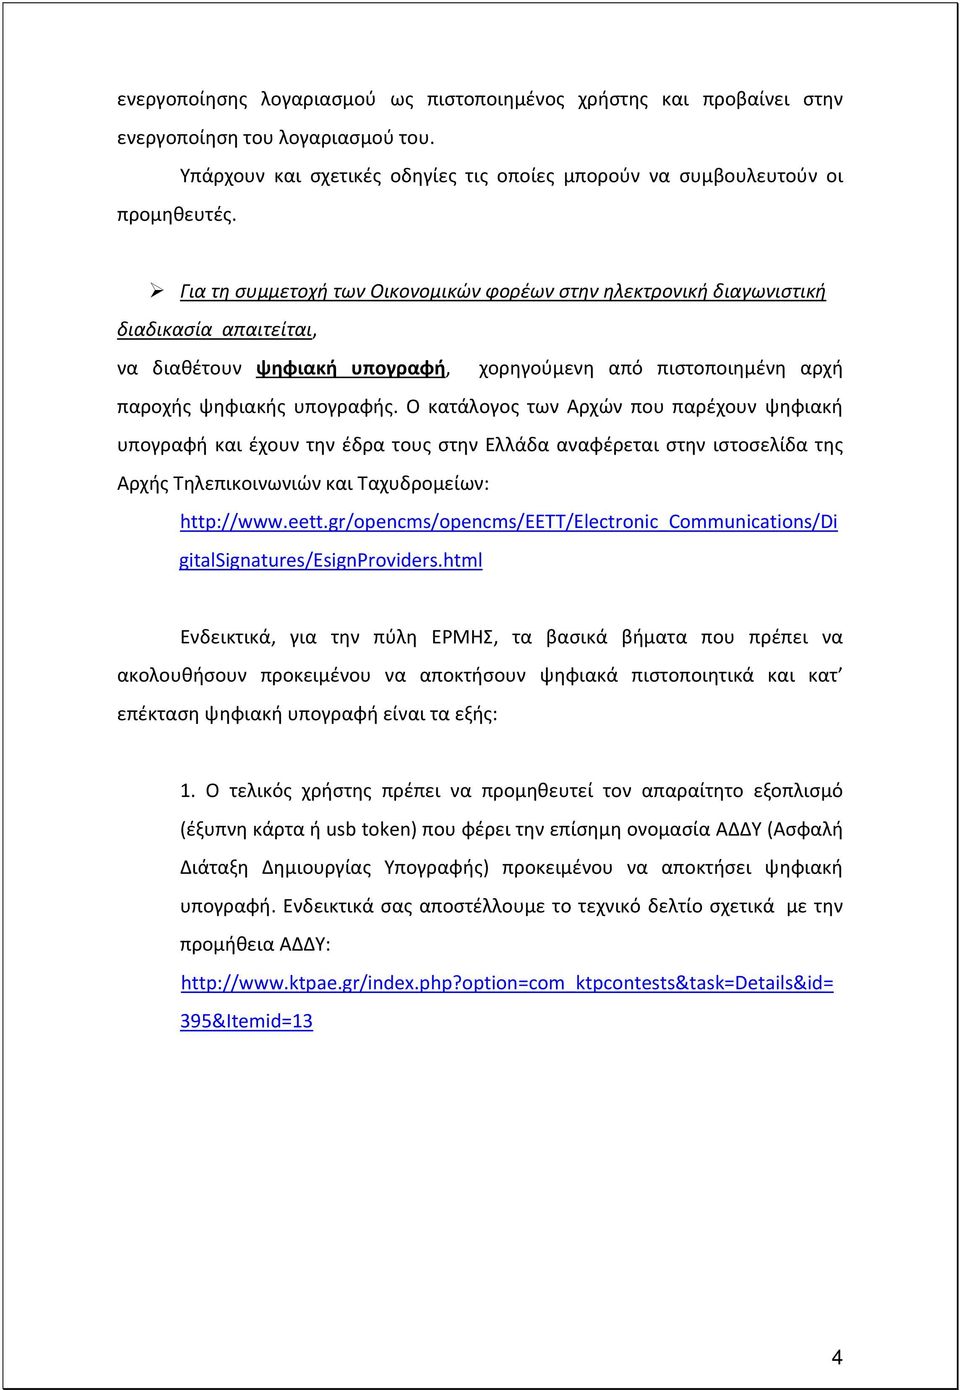 Ο κατάλογος των Αρχών που παρέχουν ψηφιακή υπογραφή και έχουν την έδρα τους στην Ελλάδα αναφέρεται στην ιστοσελίδα της Αρχής Τηλεπικοινωνιών και Ταχυδρομείων: http://www.eett.